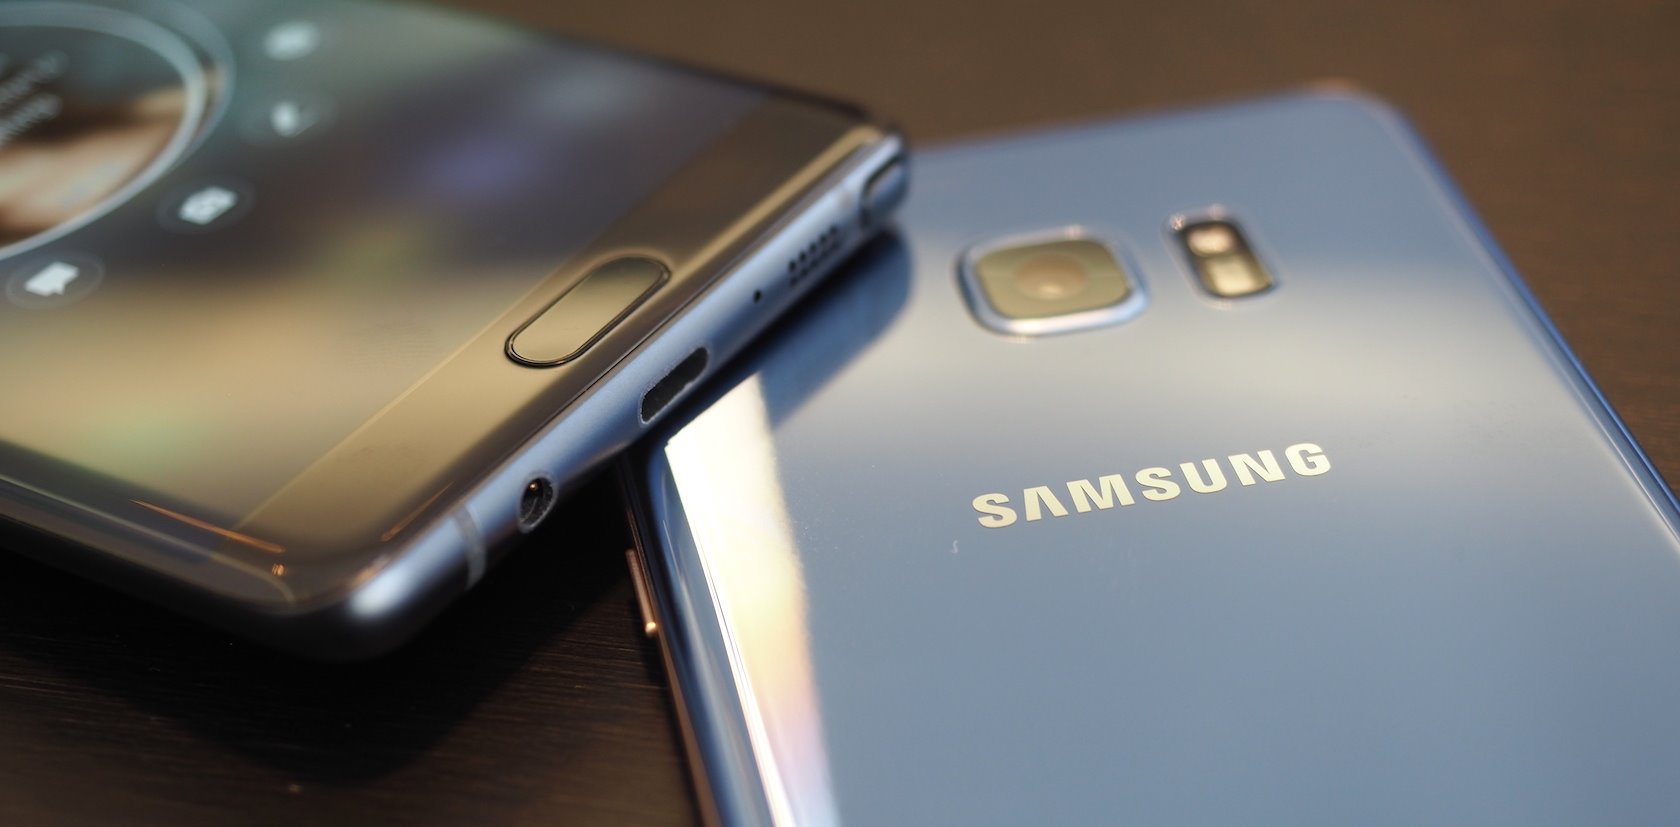 Actualités Samsung Galaxy Note7, prix de sortie, spécifications, images